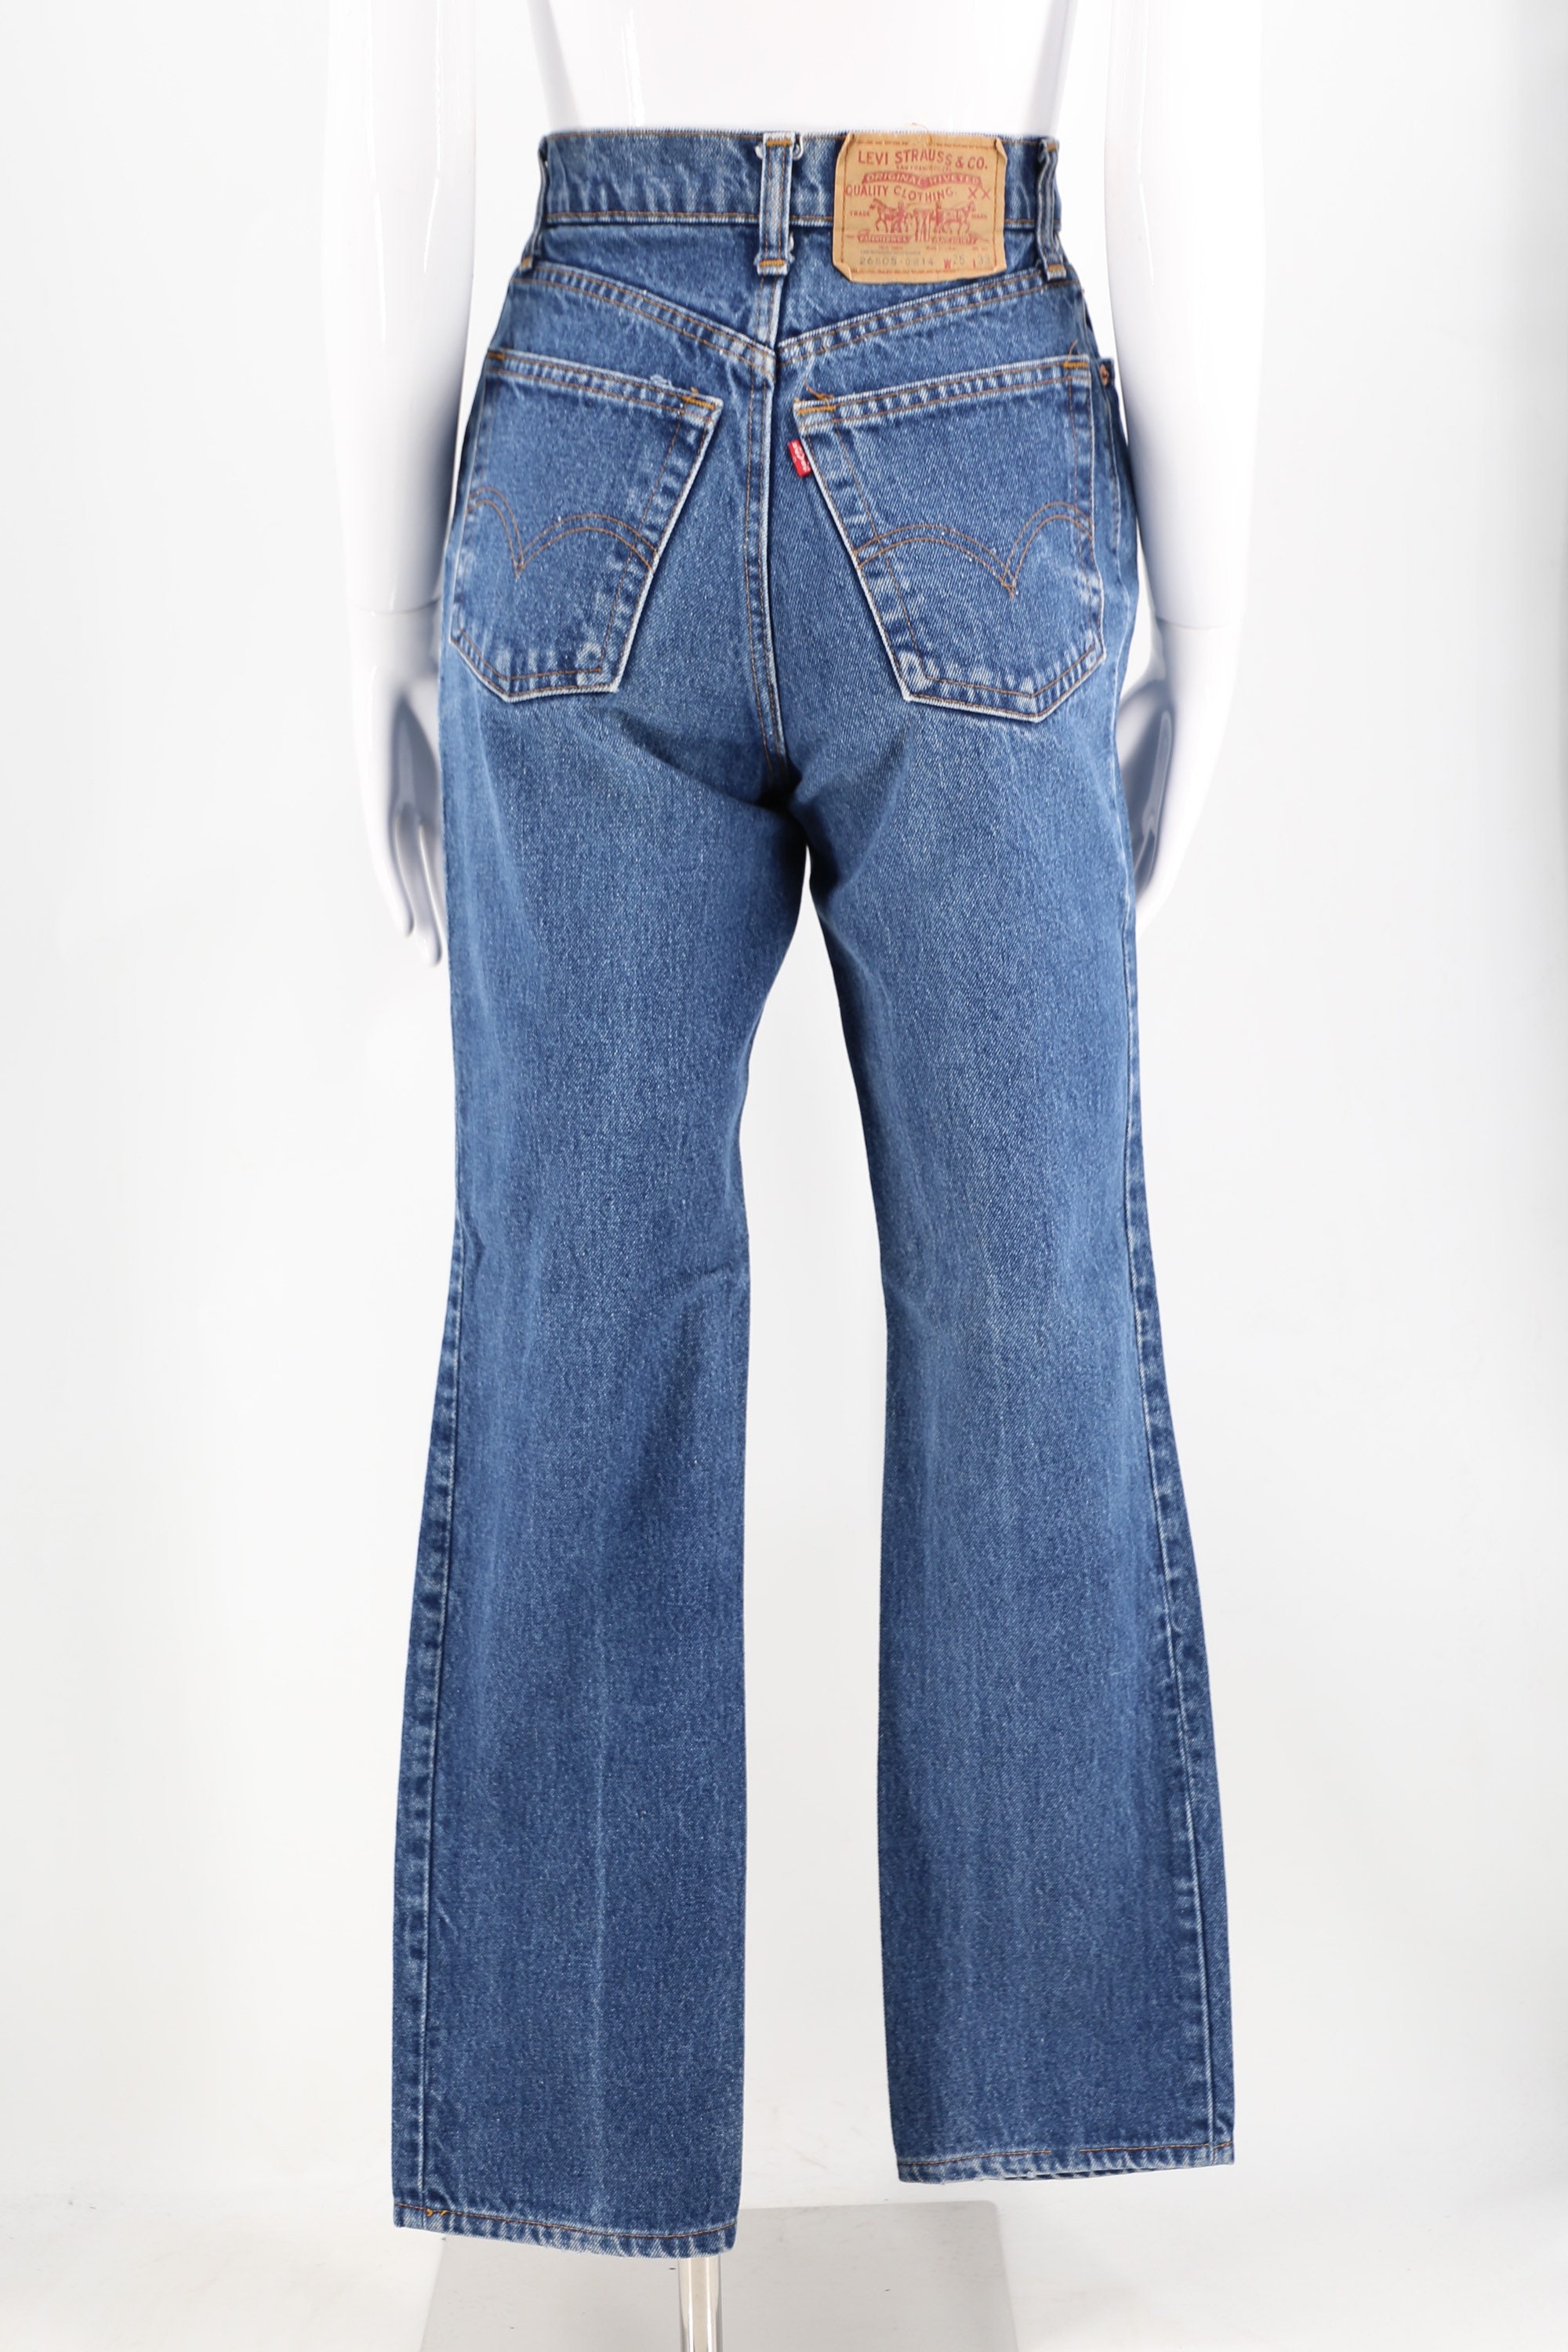 70s 80s LEVIS 505 high waist fit jeans 25 / vintage 1970s 1980s medium wash  sexy fit Levis pants 25 x 30